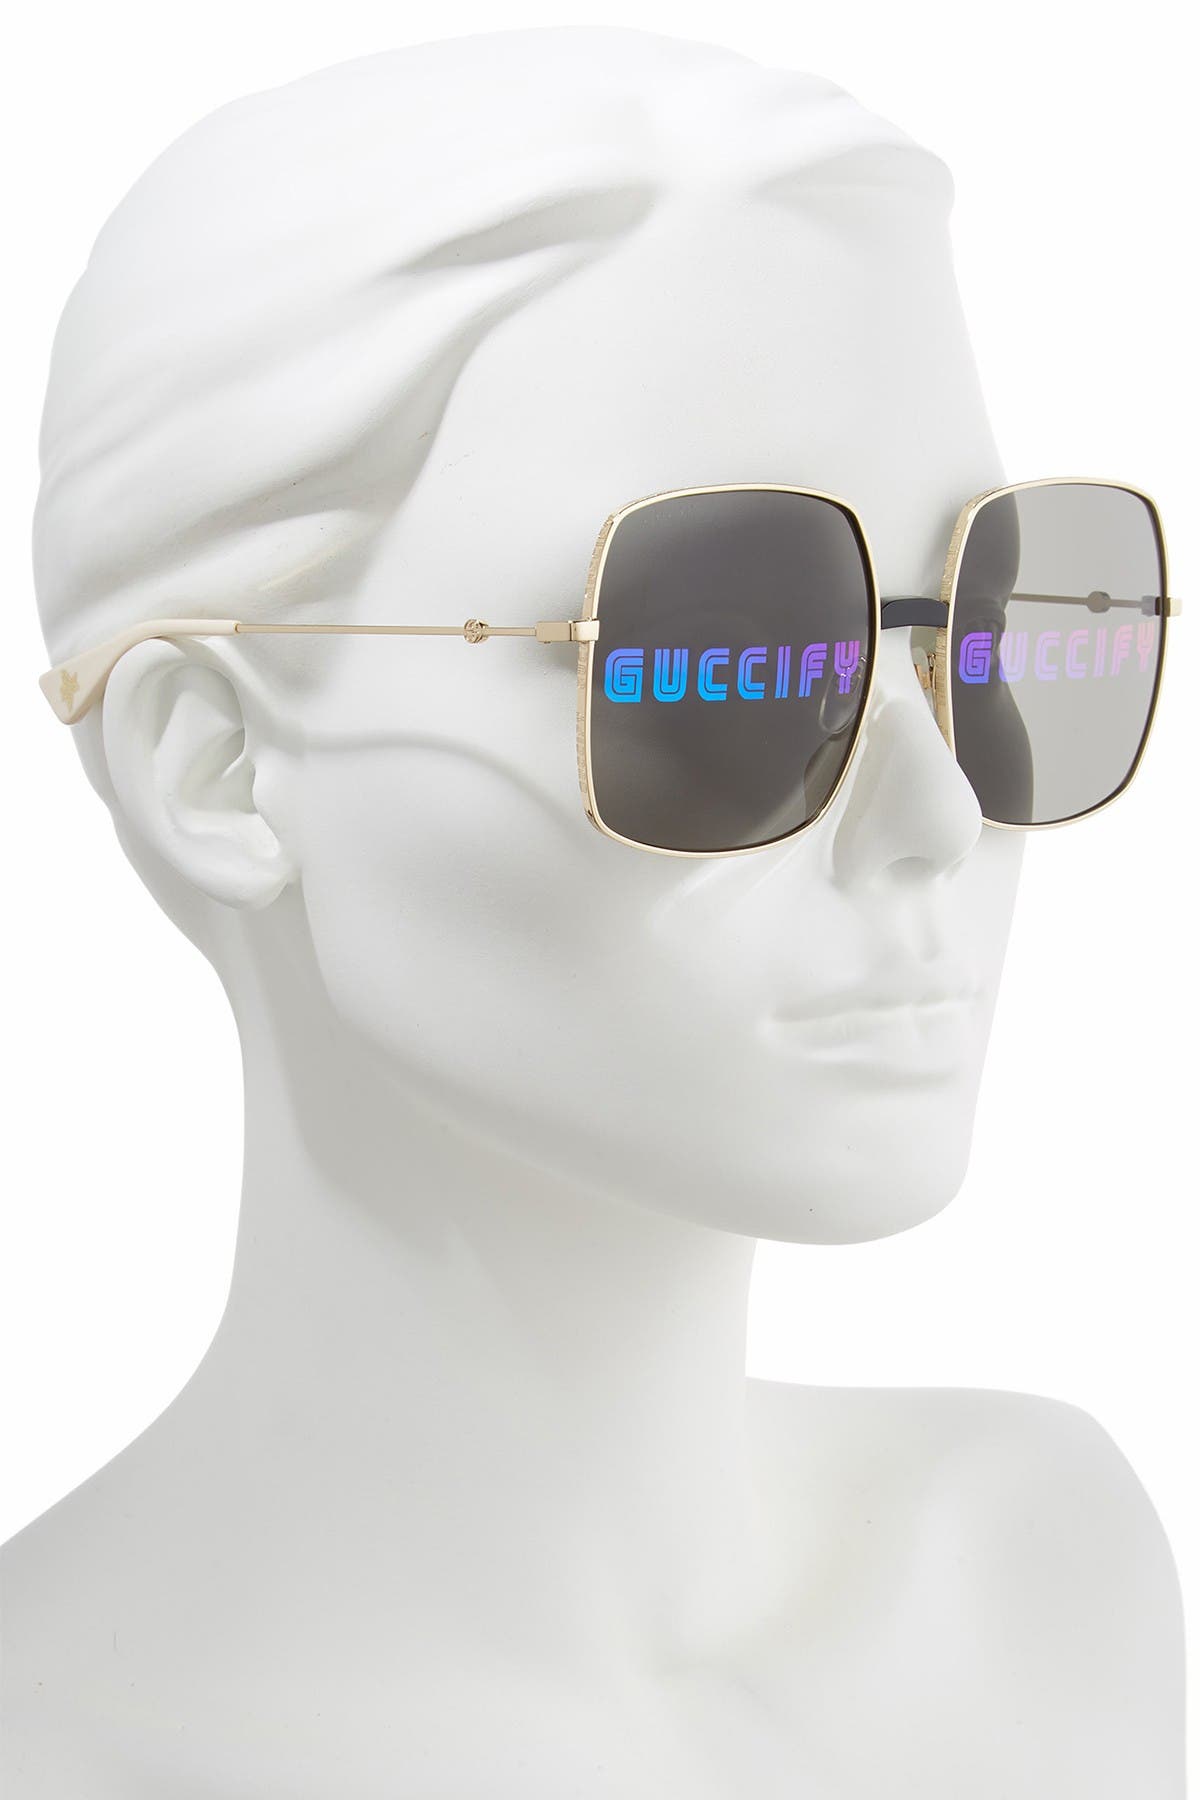 guccify sunglasses